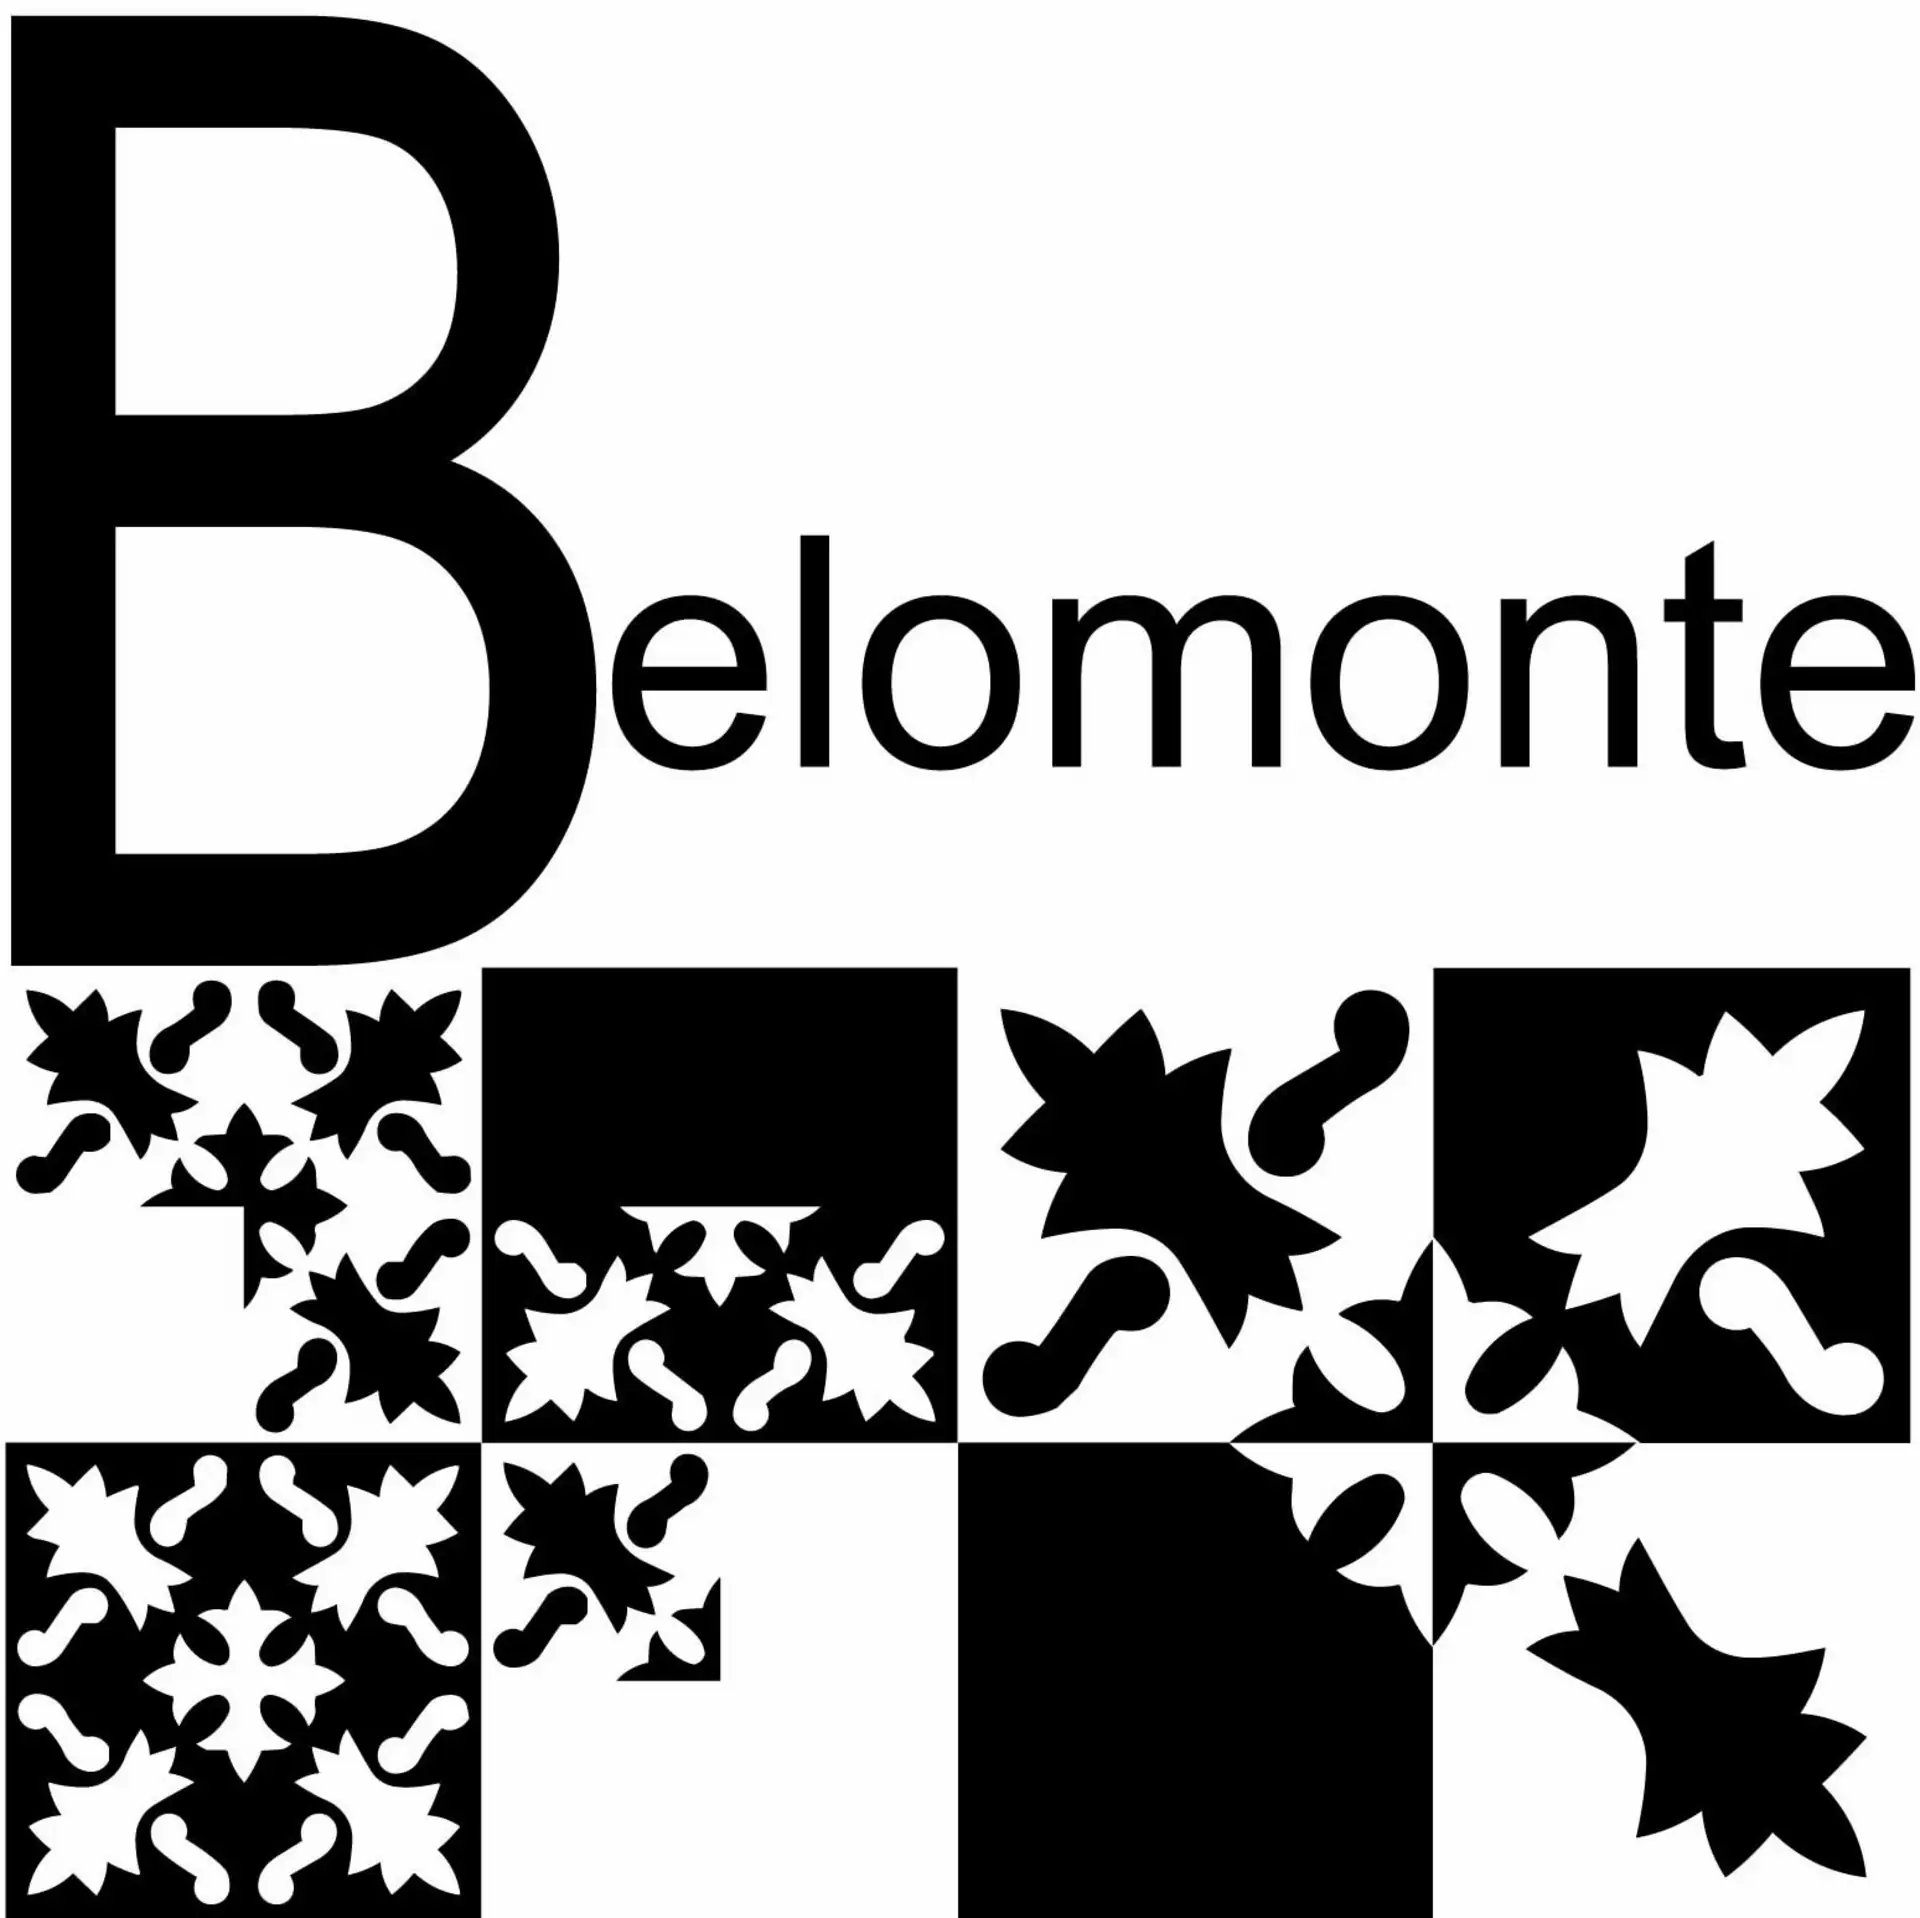 Belomonte 20